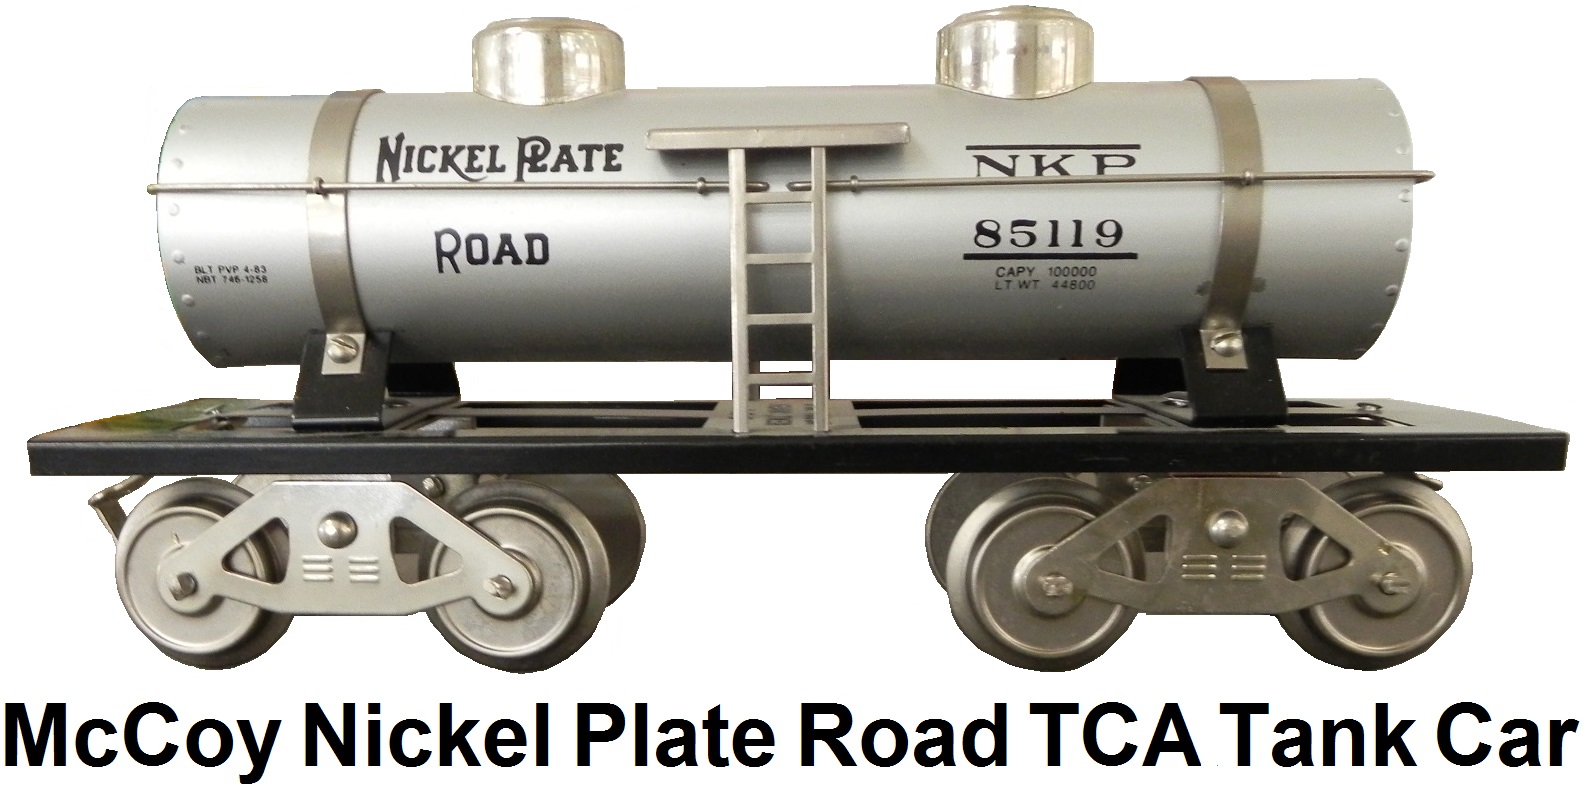 McCoy Standard Gauge #85119 Nickel Plate Road 2-Dome TCA Tank Car repainted by Newbraugh Brothers